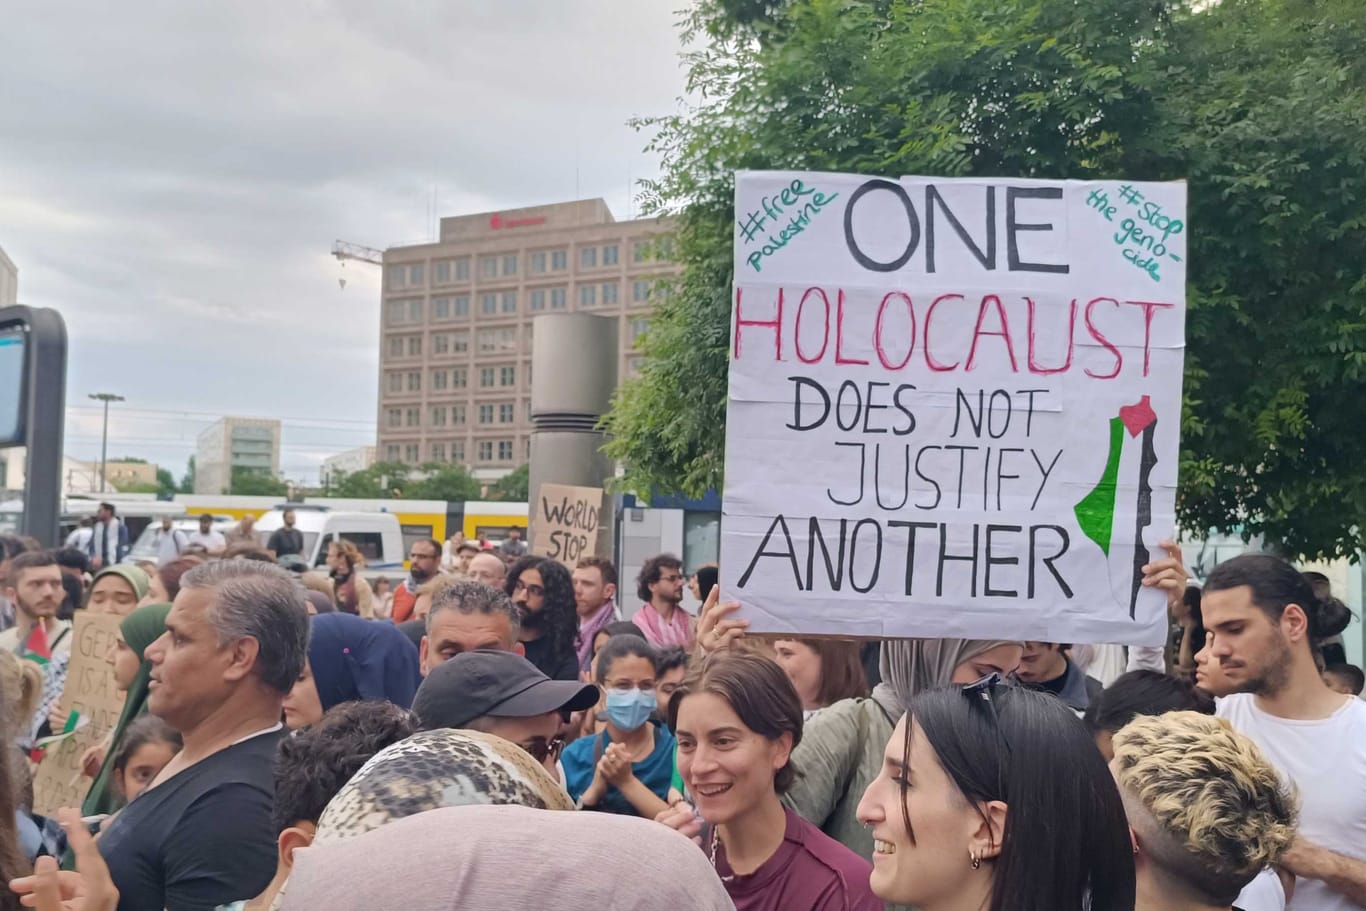 Plakat bei Demonstration am Alexanderplatz: "Ein Holocaust rechtfertigt keinen weiteren", steht darauf auf Englisch.